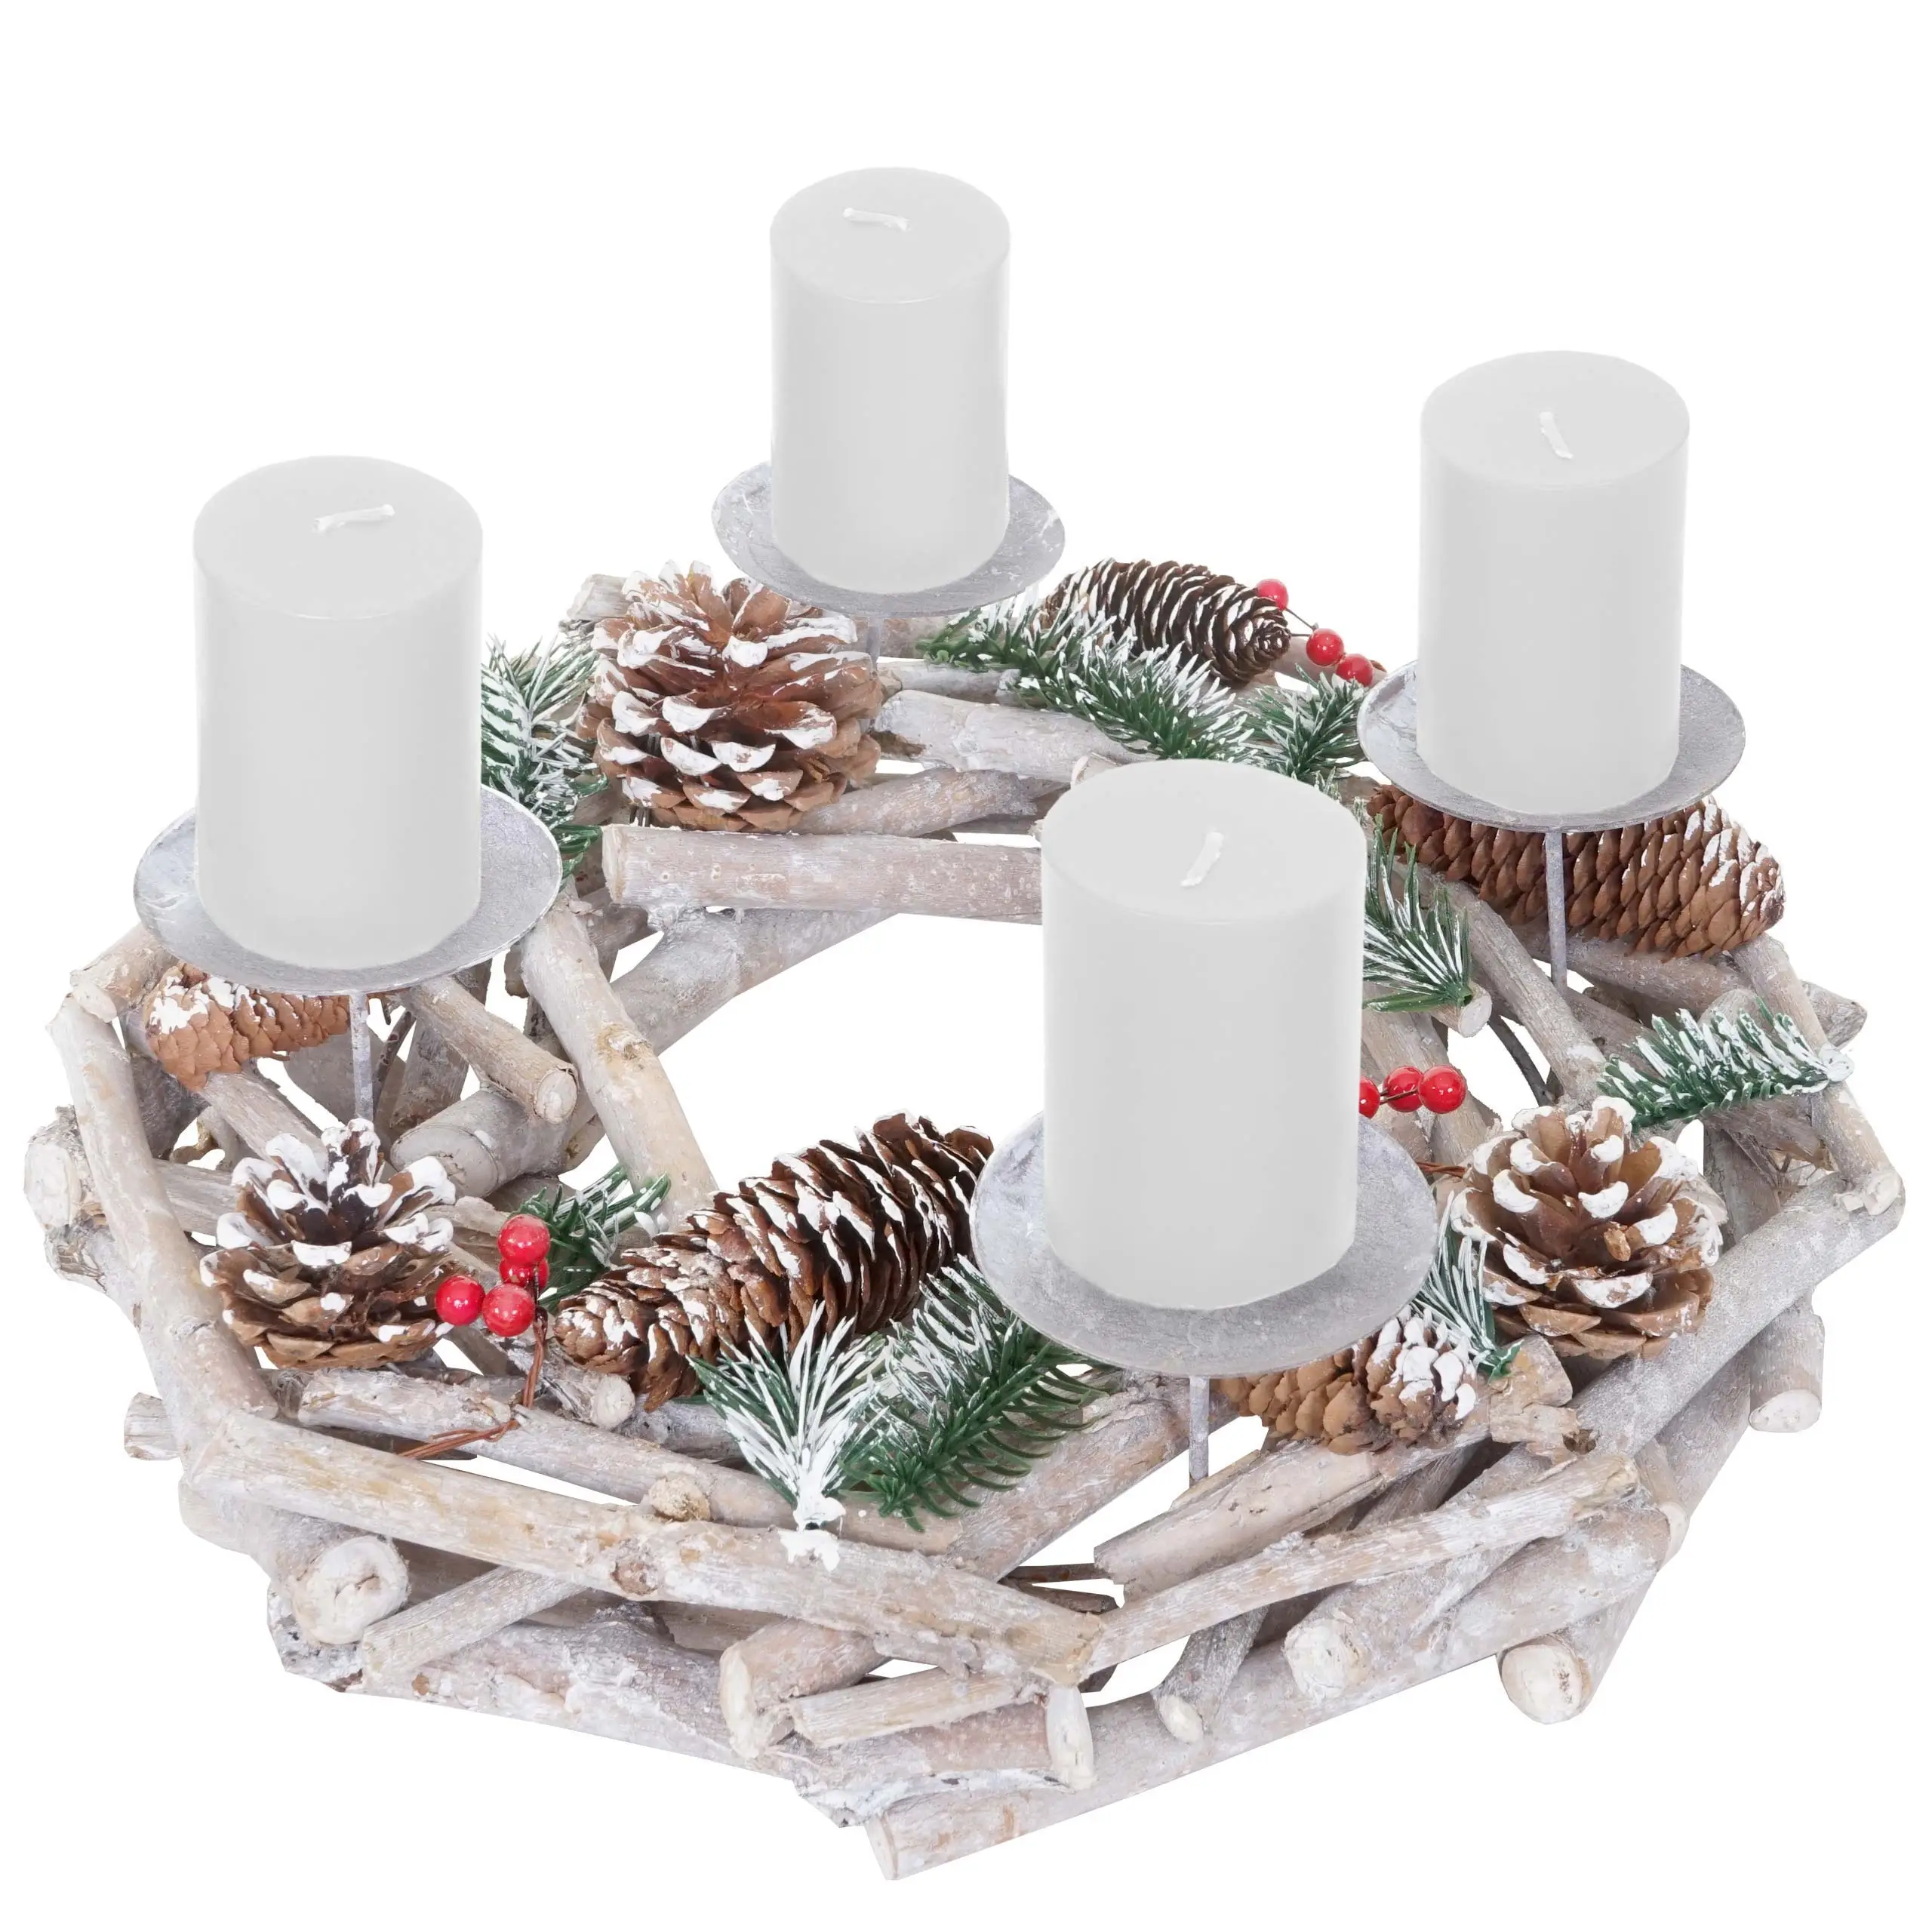 Kerzen rund wei脽 Holz Adventskranz